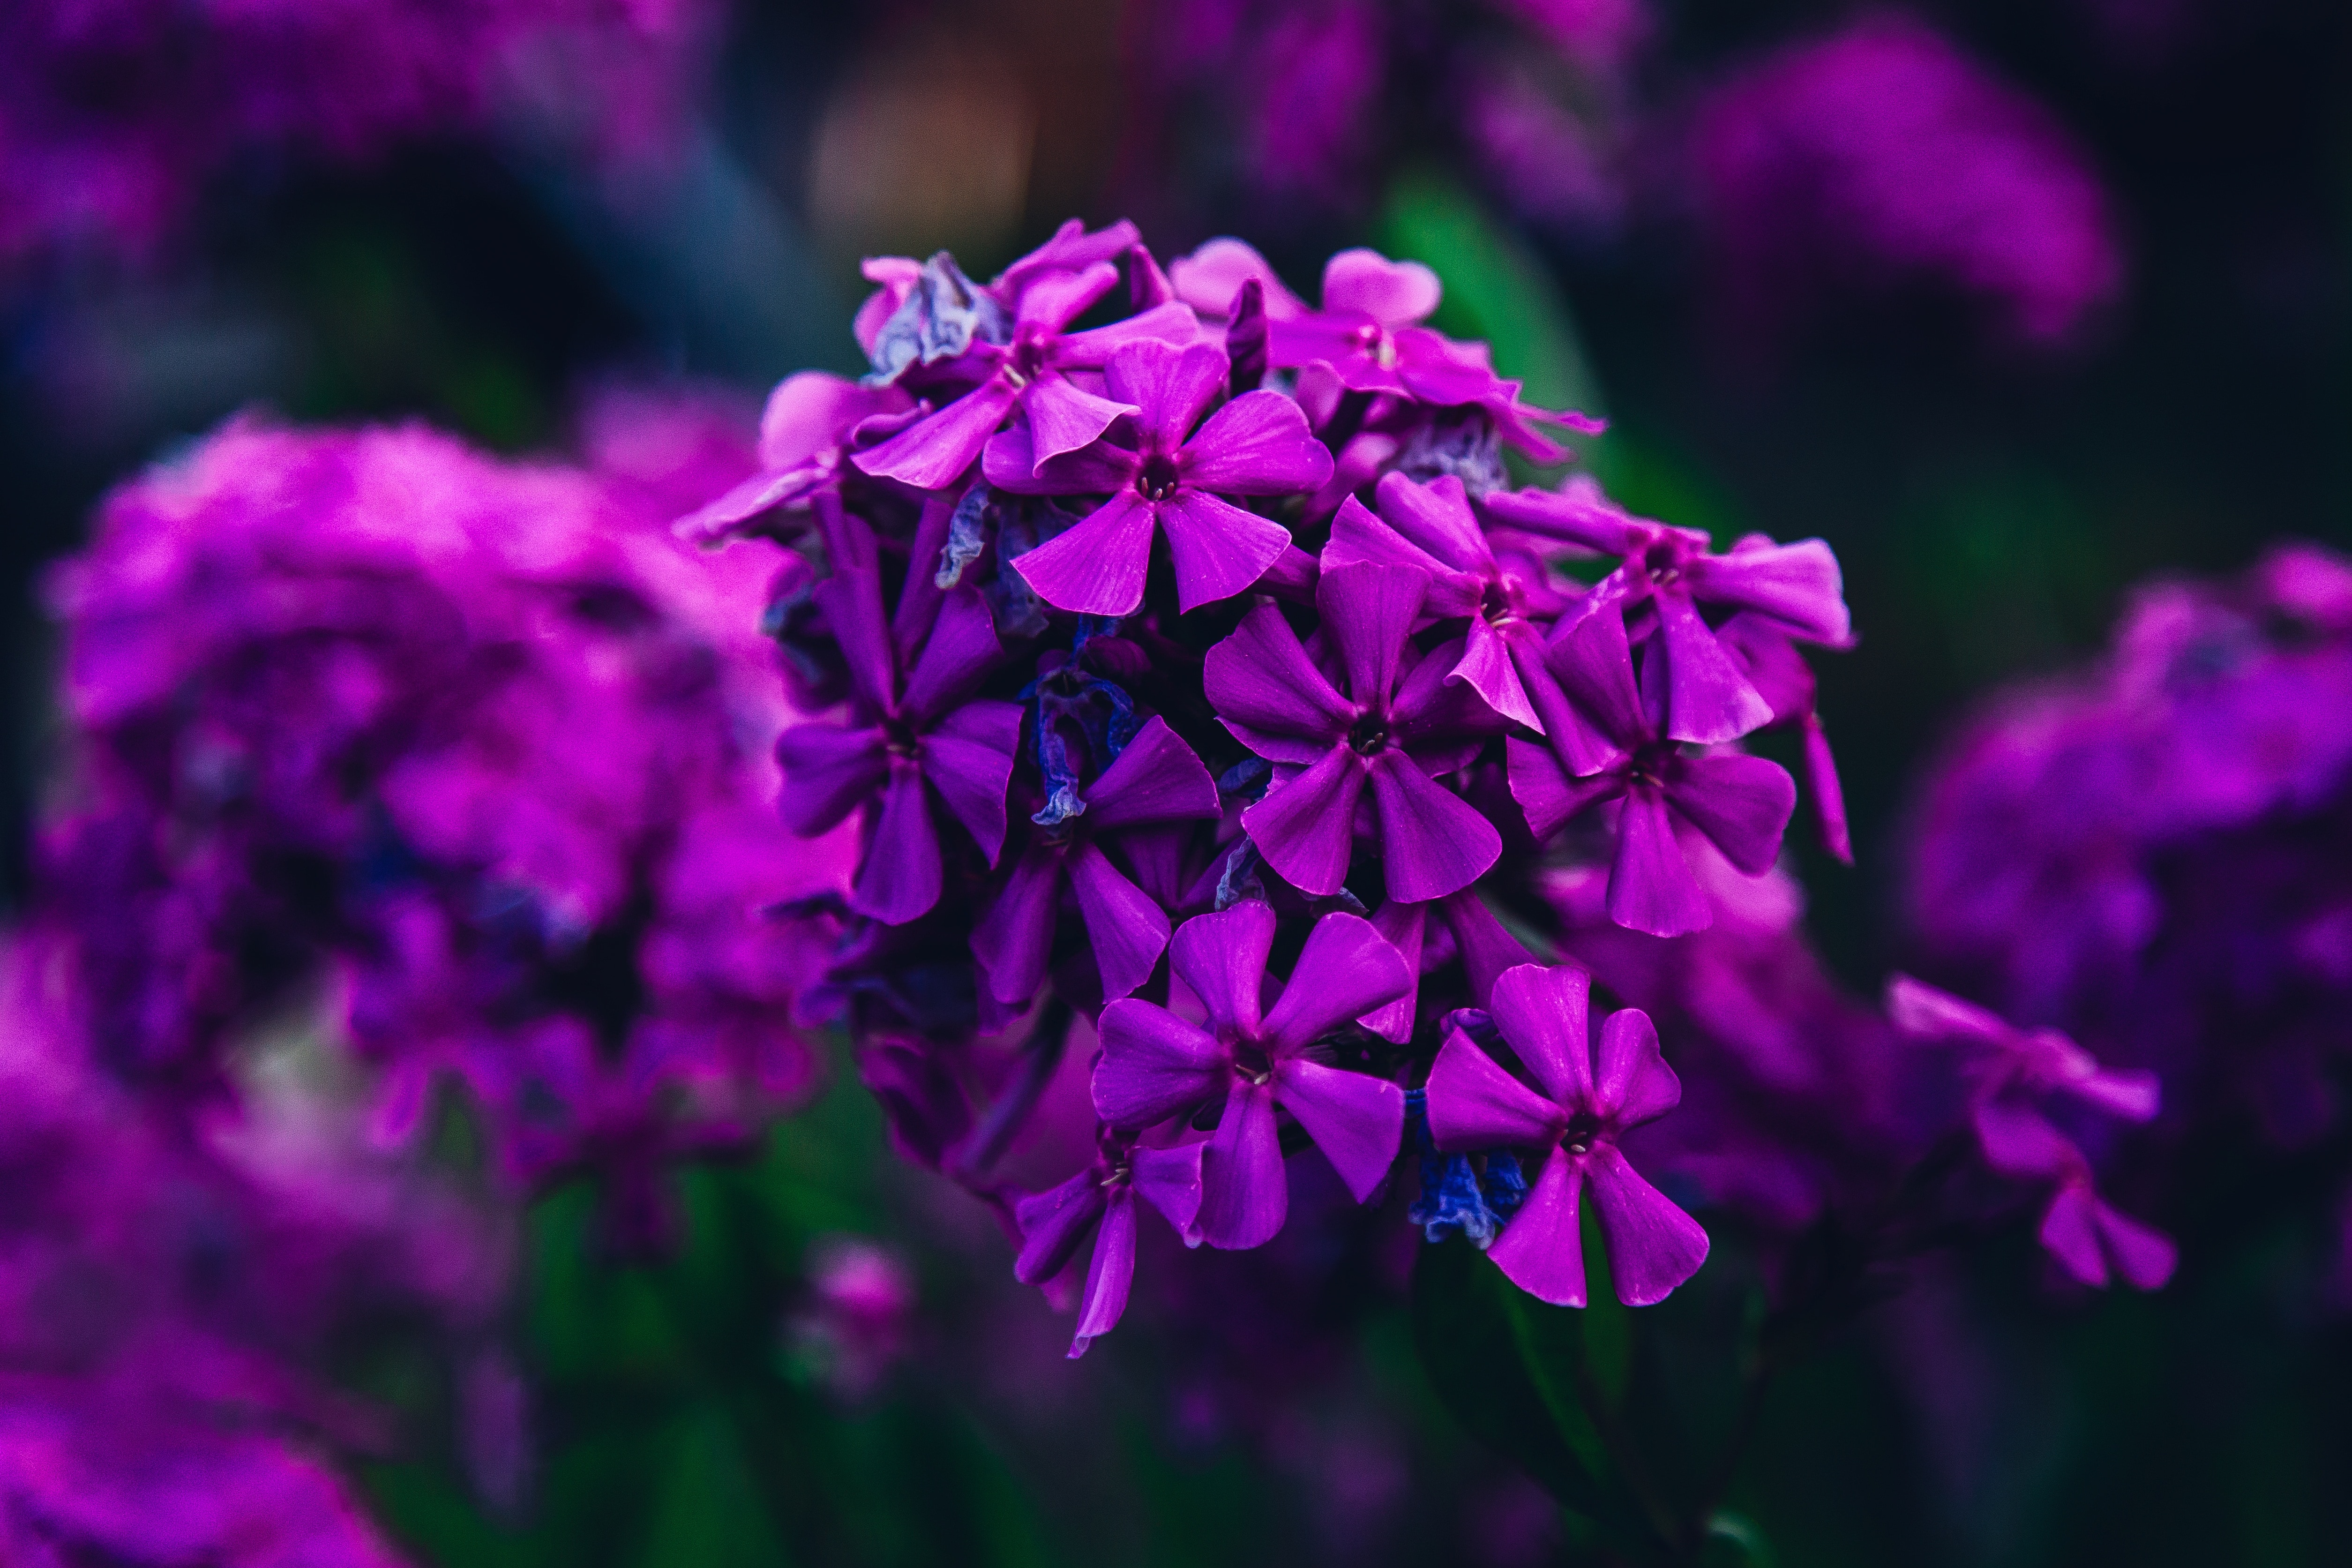 Flower, Focus, Nature, Purple, Garden, flower, purple